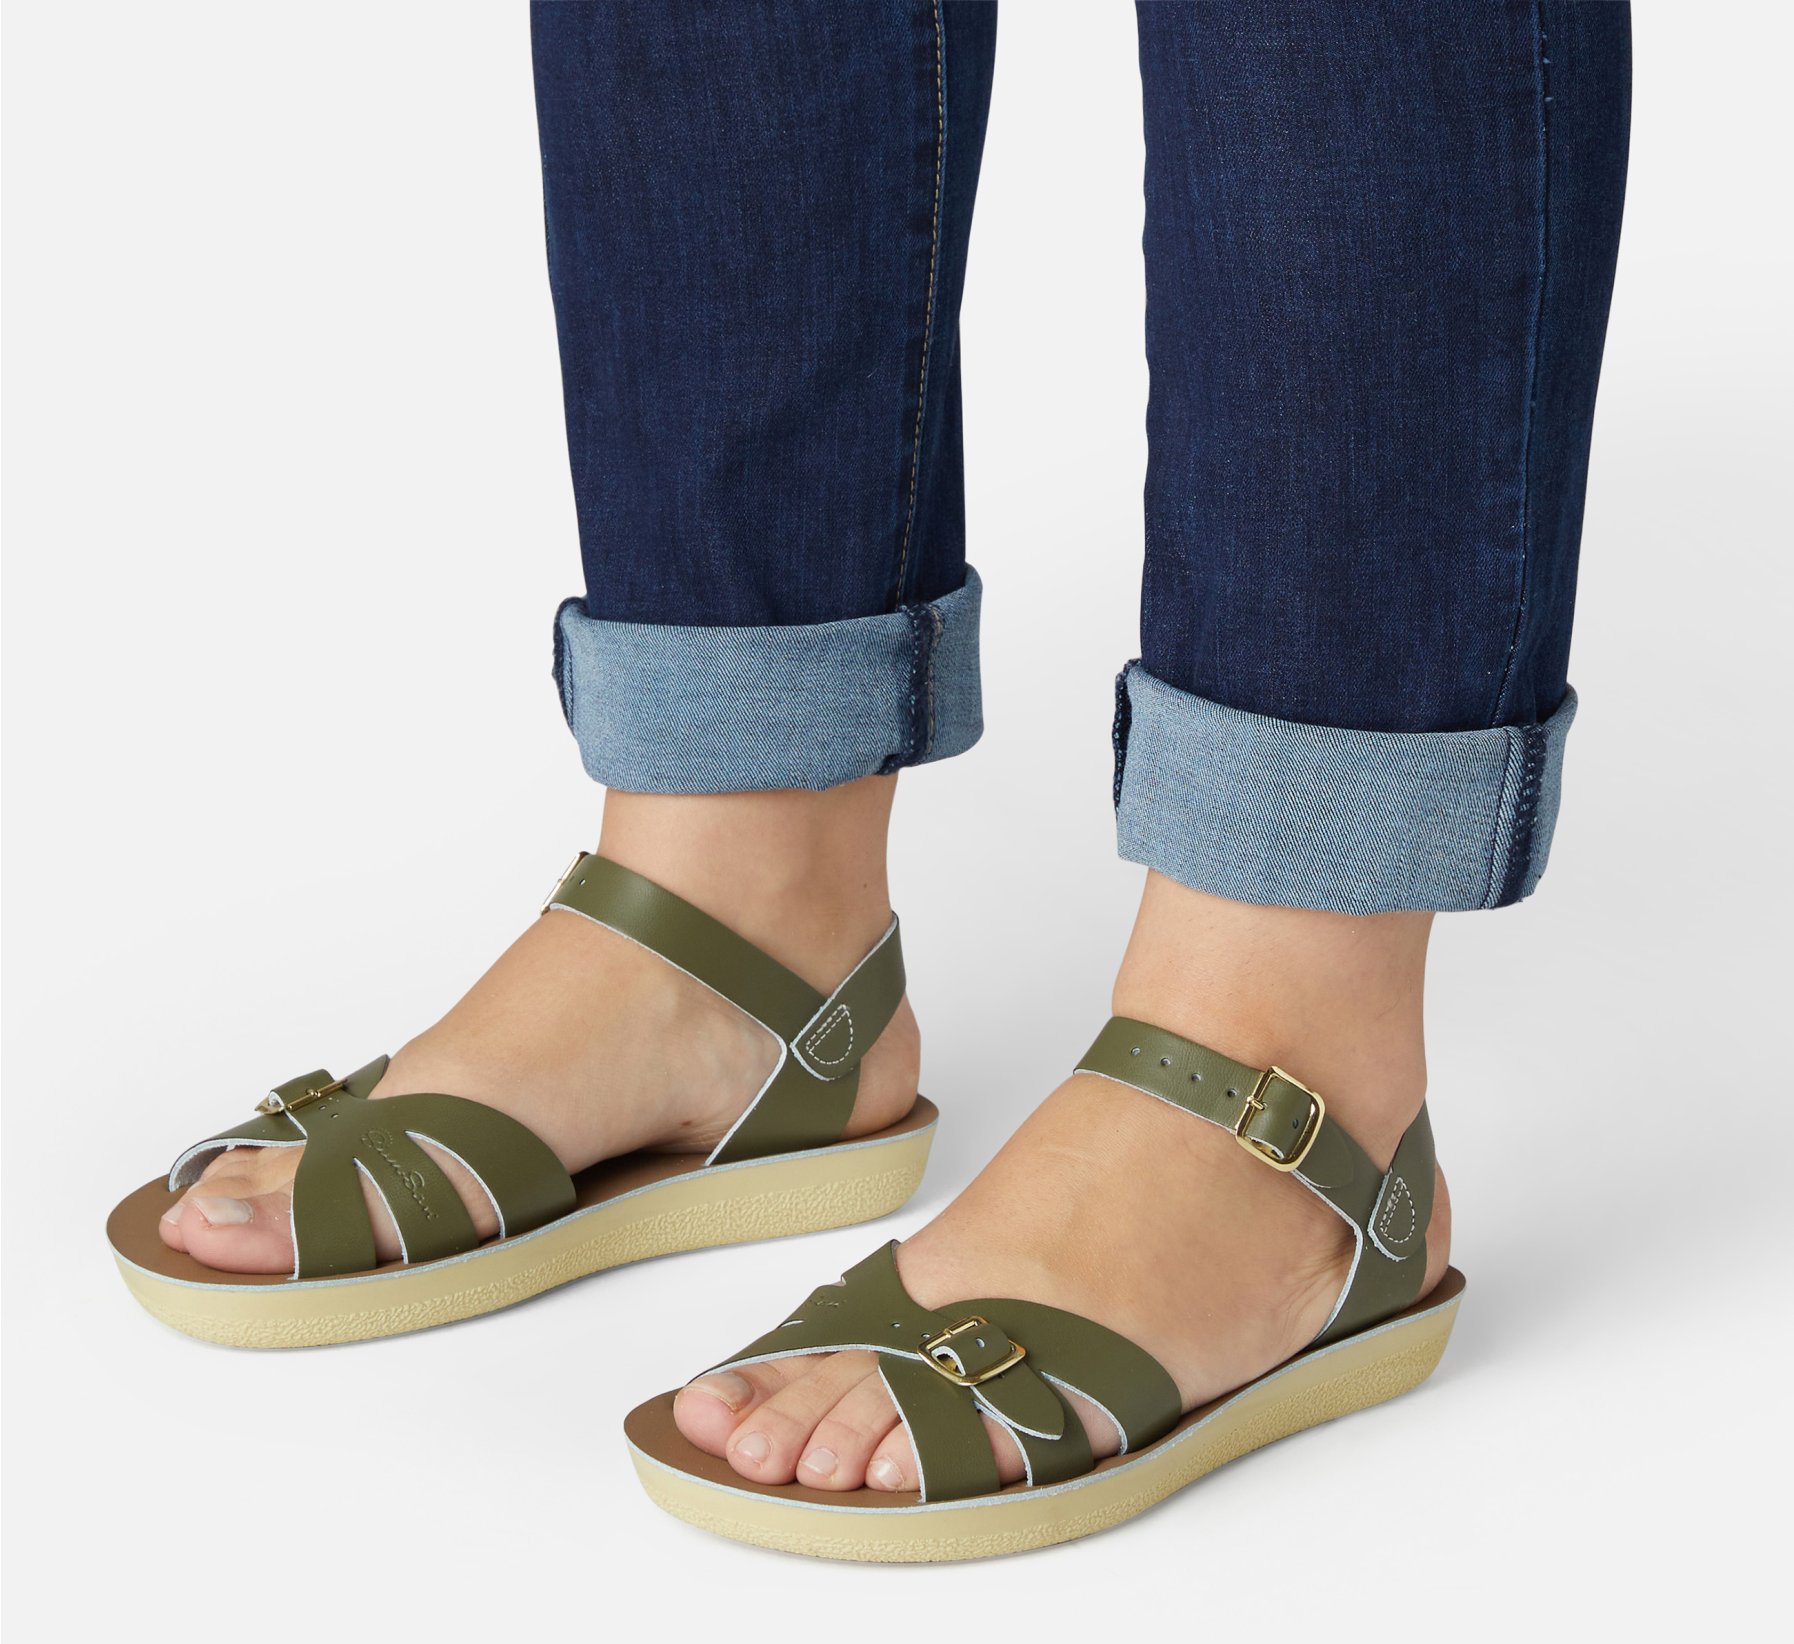 Boardwalk Olive Sandal - Salt Water Sandals